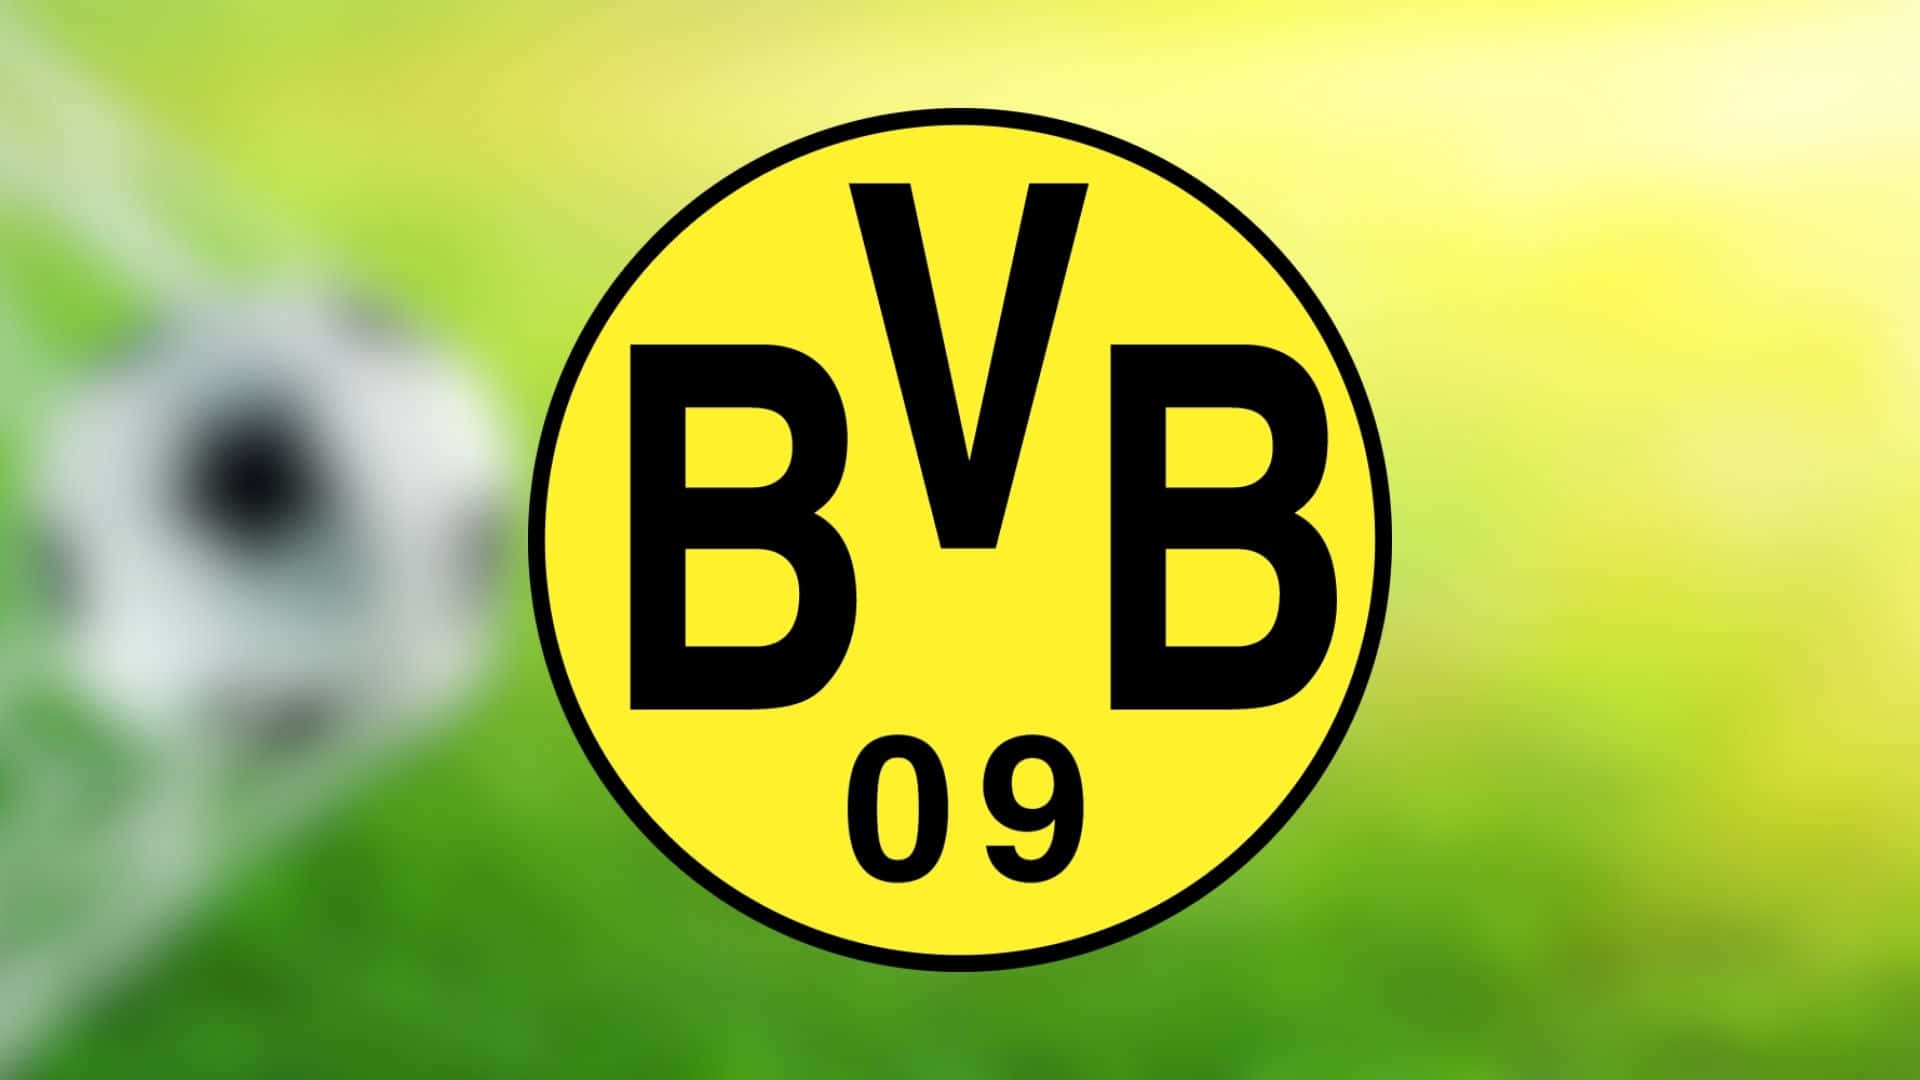 Bvb09-logo På En Grøn Mark. Wallpaper